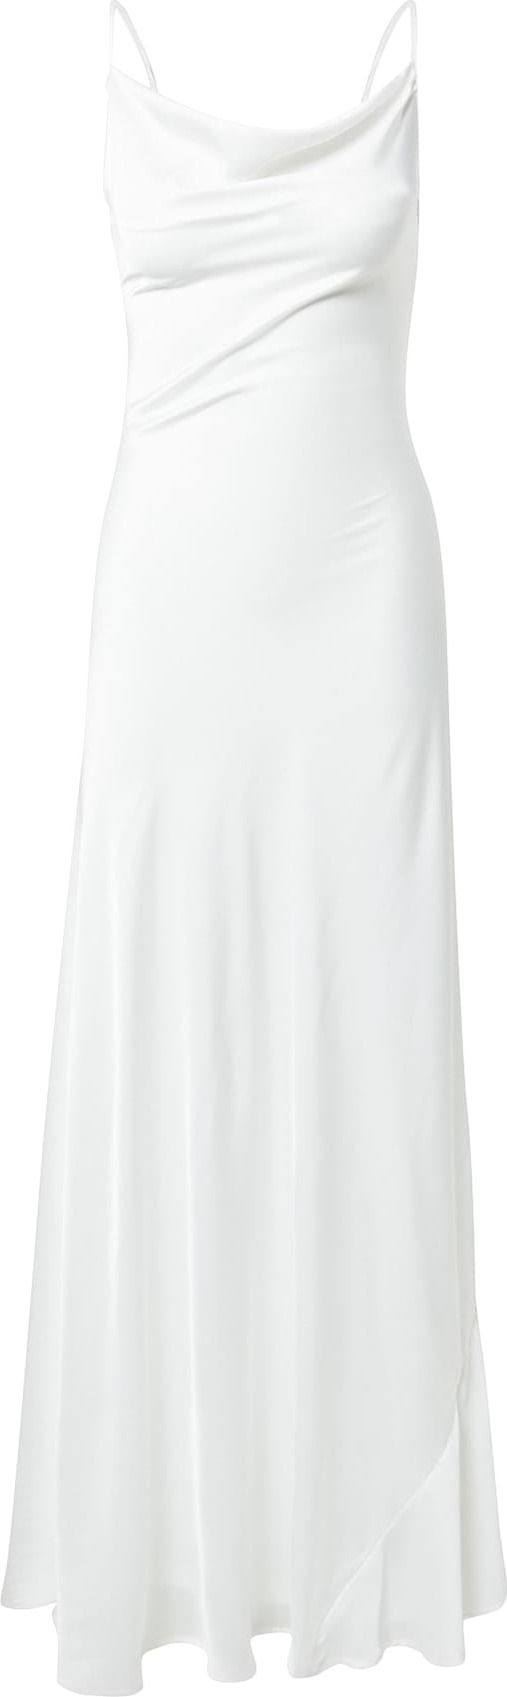 Skirt & Stiletto Společenské šaty 'Dawn' bílá